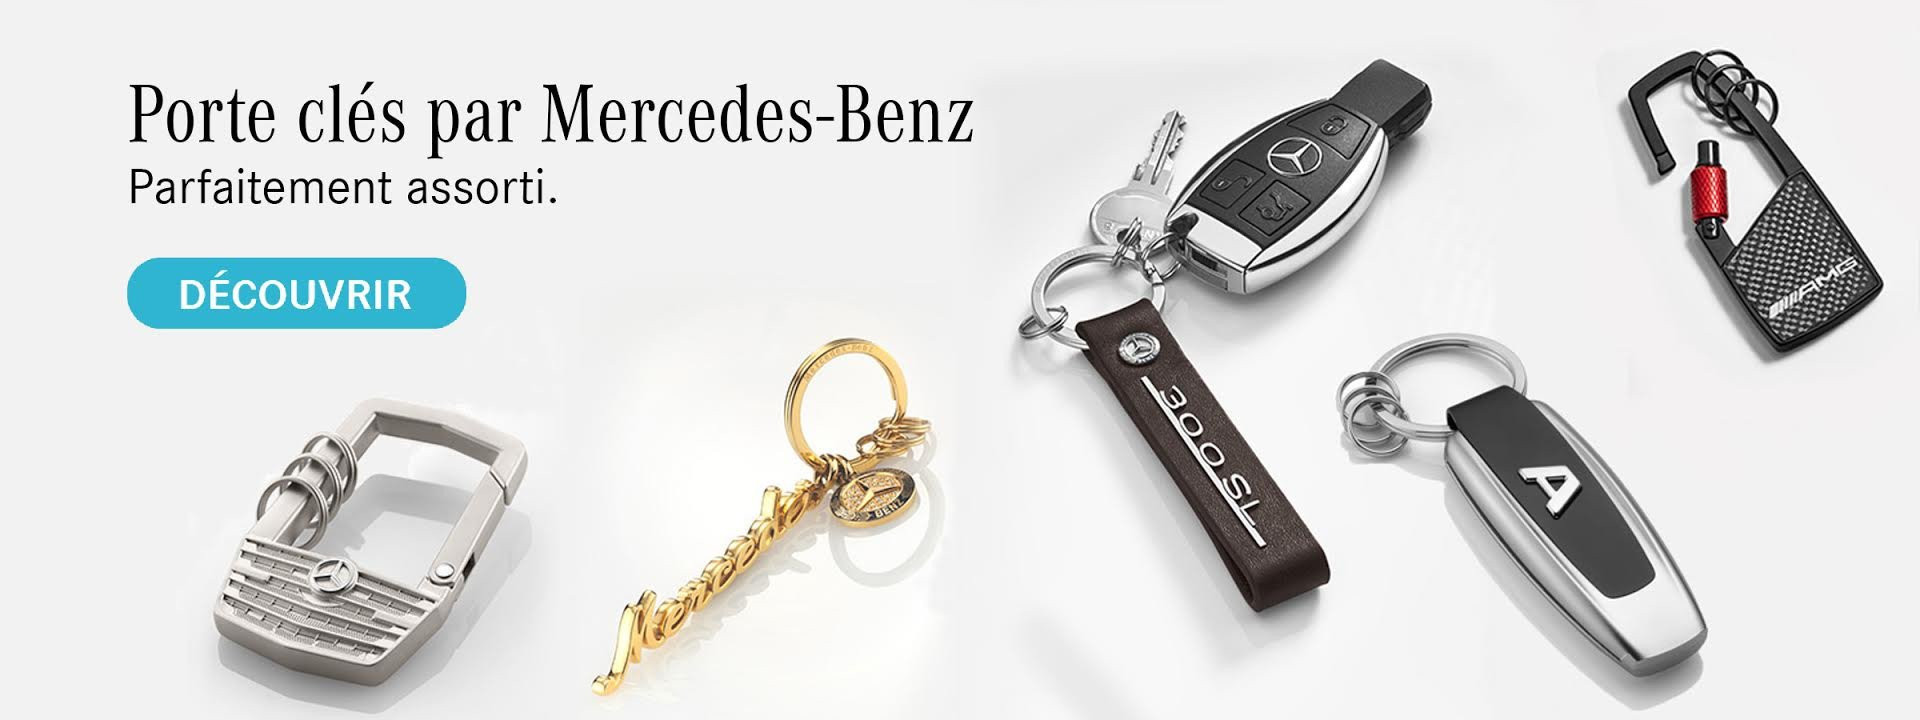 Portes clés - Mercedes-Benz